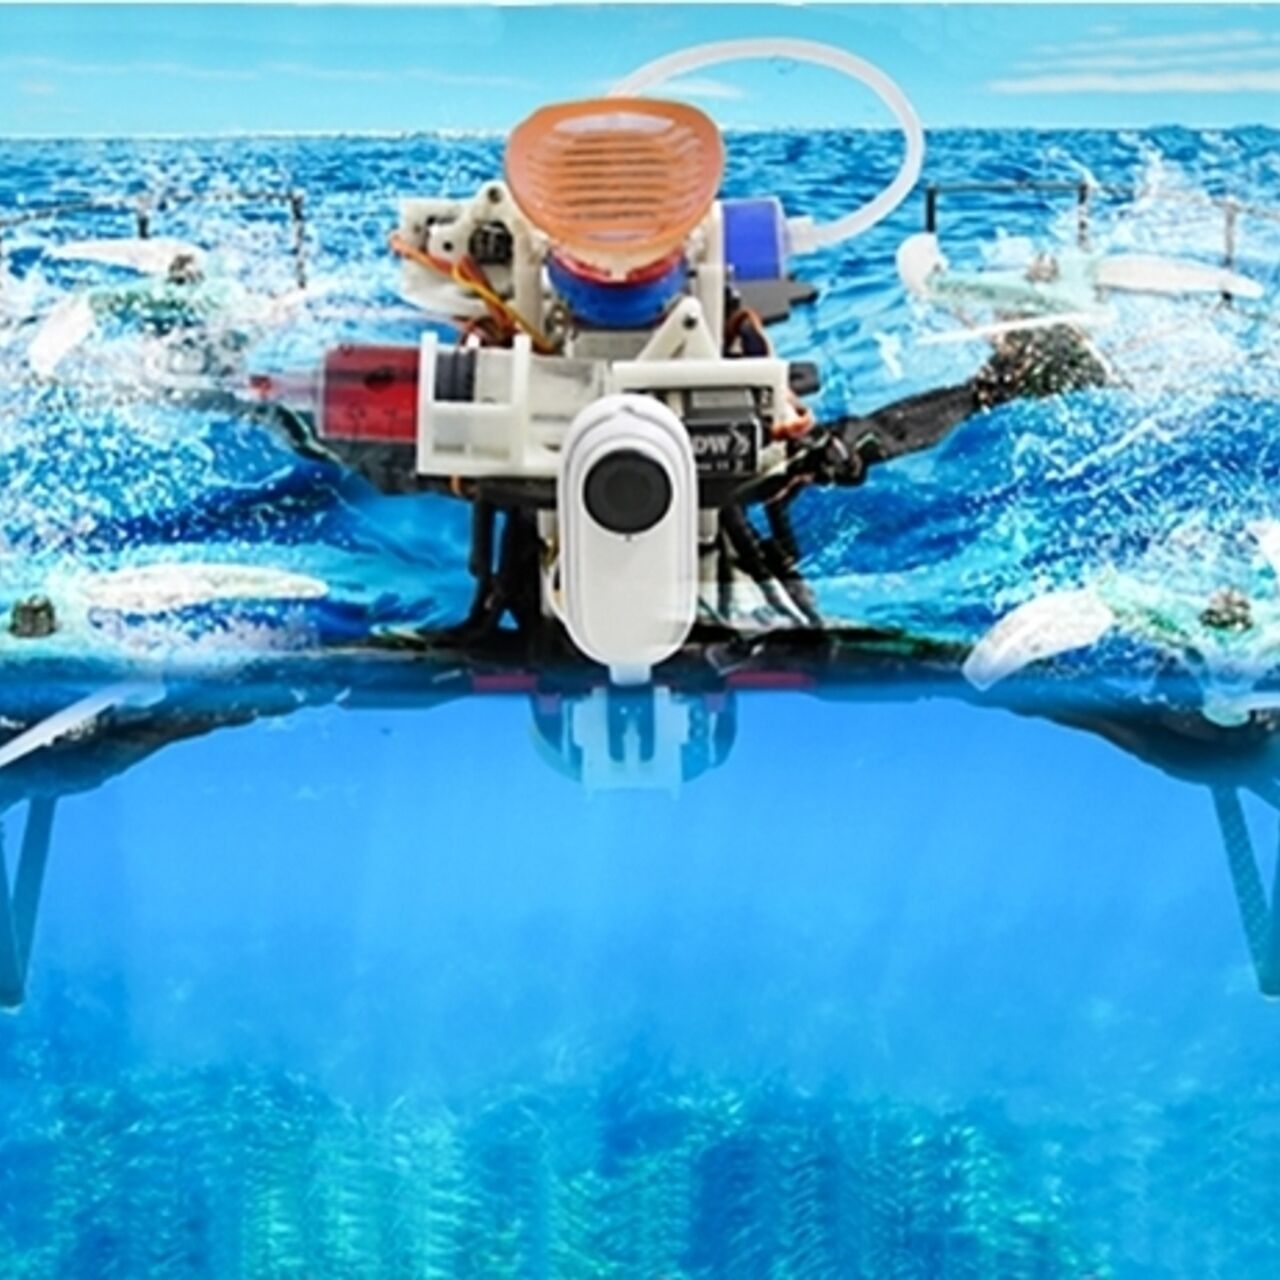 Drone aria-acqua: un nuovo robot aero-acquatico ha ridotto a un secondo il transitorio di movimento fra gas e liquido